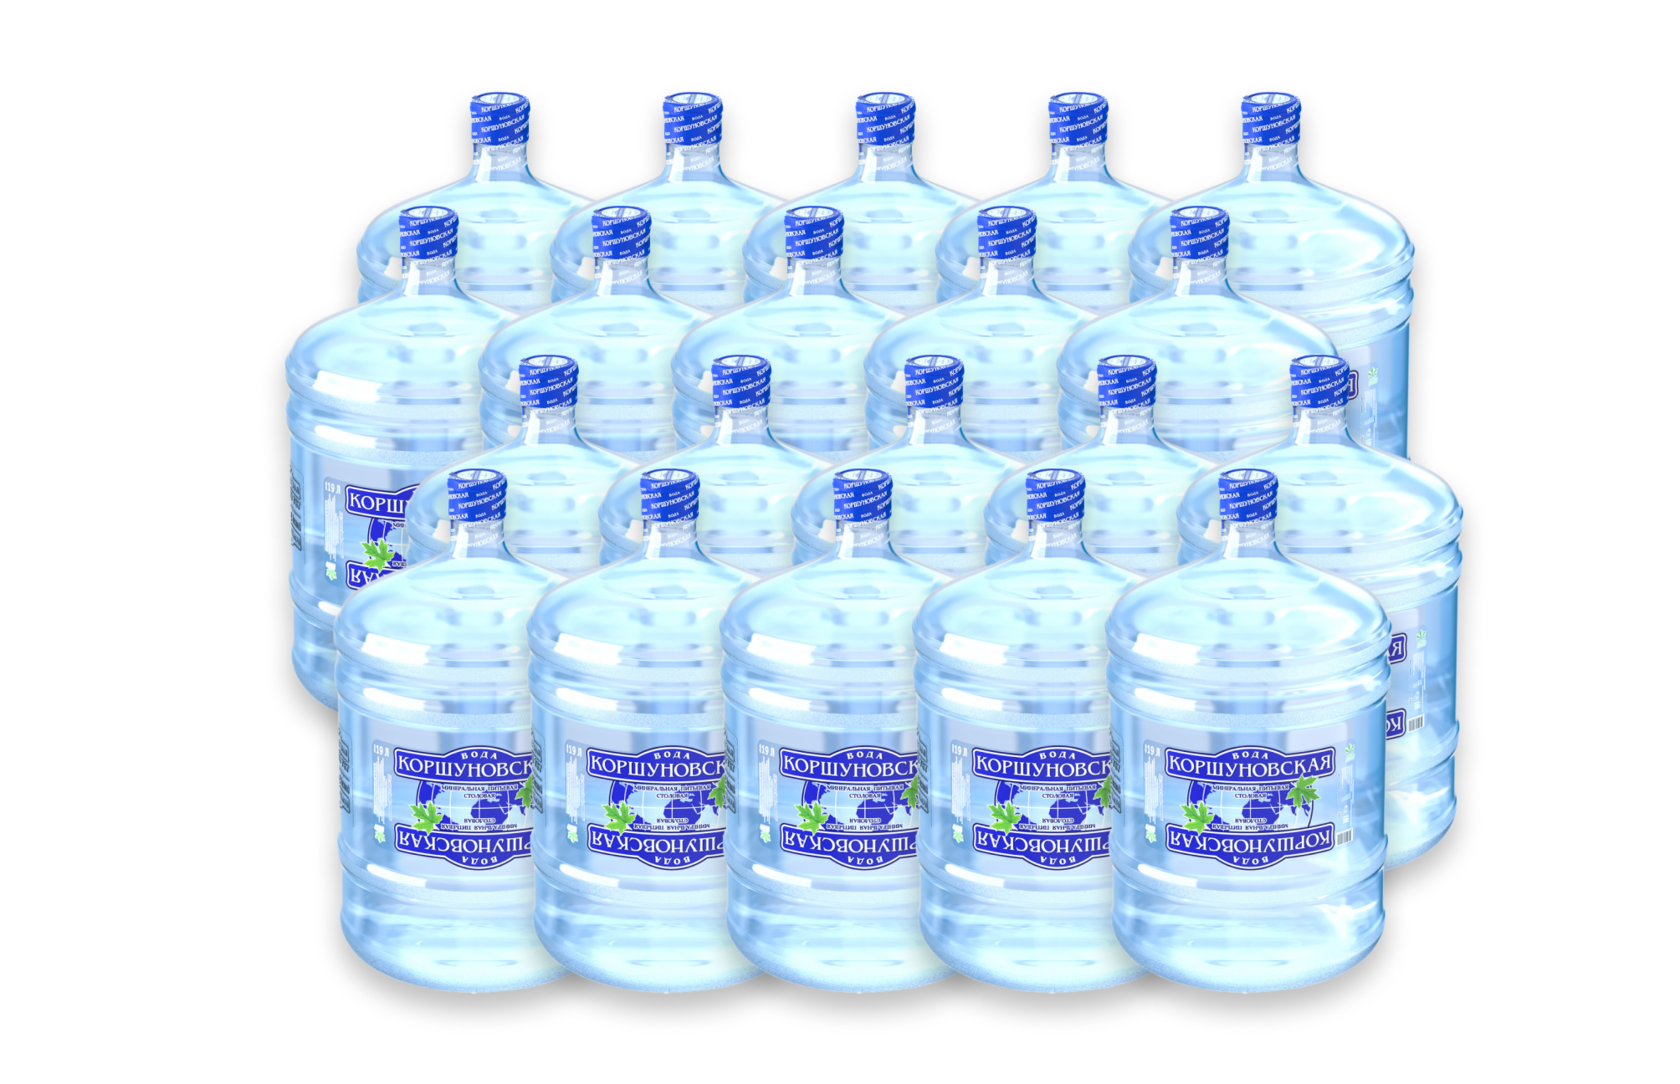 Коршуновская вода заказать. Бутилированная вода. Питьевая вода в бутылях. Бутылка воды 19 литров. Вода в 19 литровых бутылках.